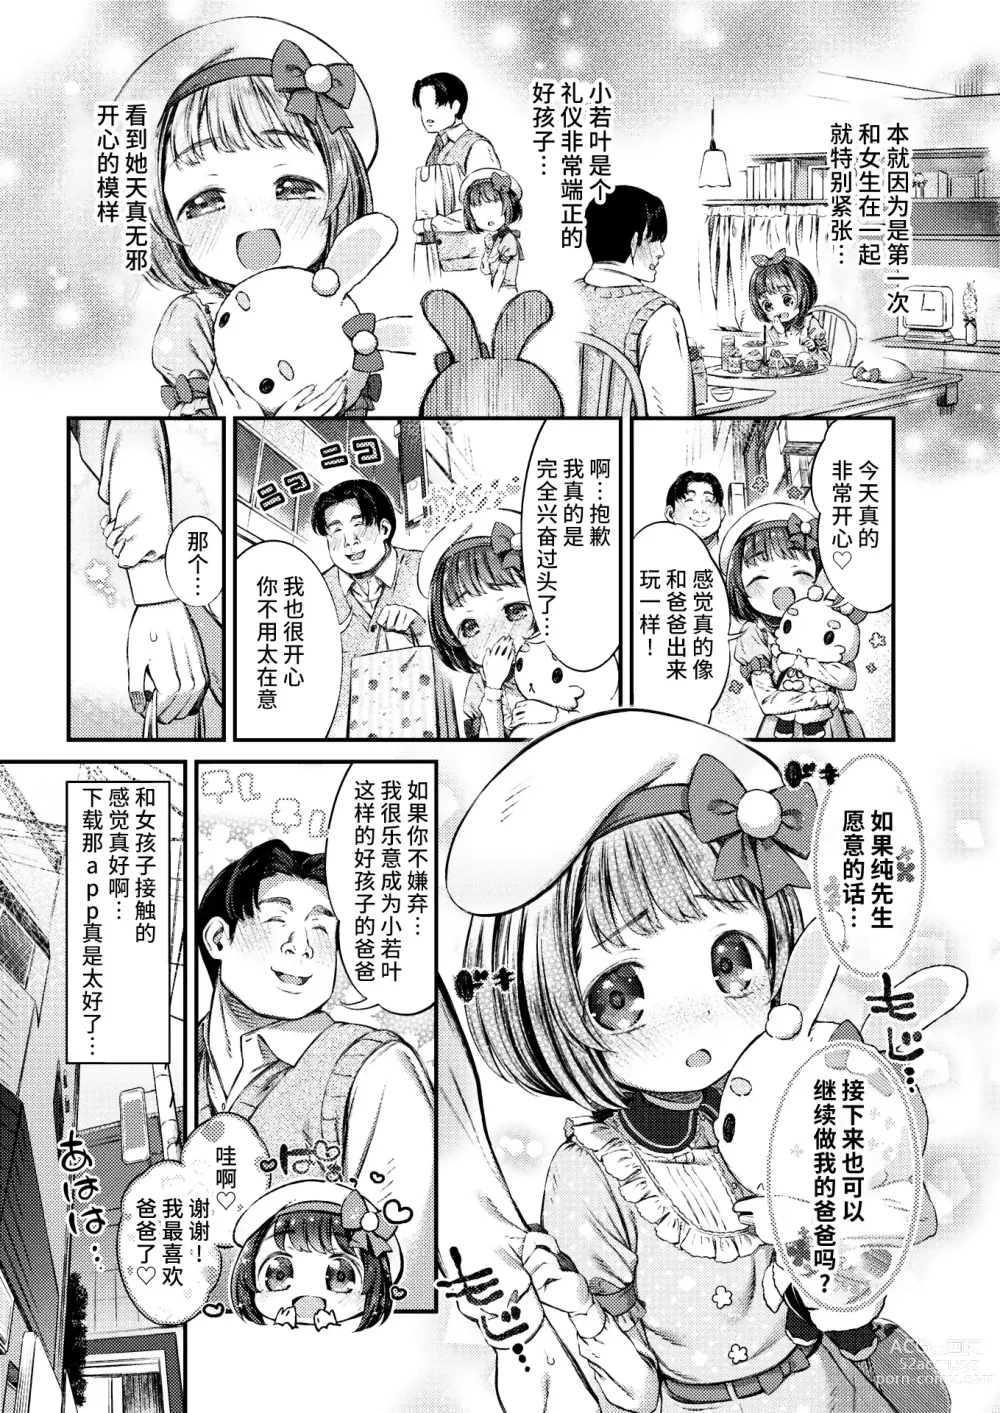 Page 3 of manga Papakatsu ni wa Kiken ga Ippai! - Papa Sex with Dangerous Girl